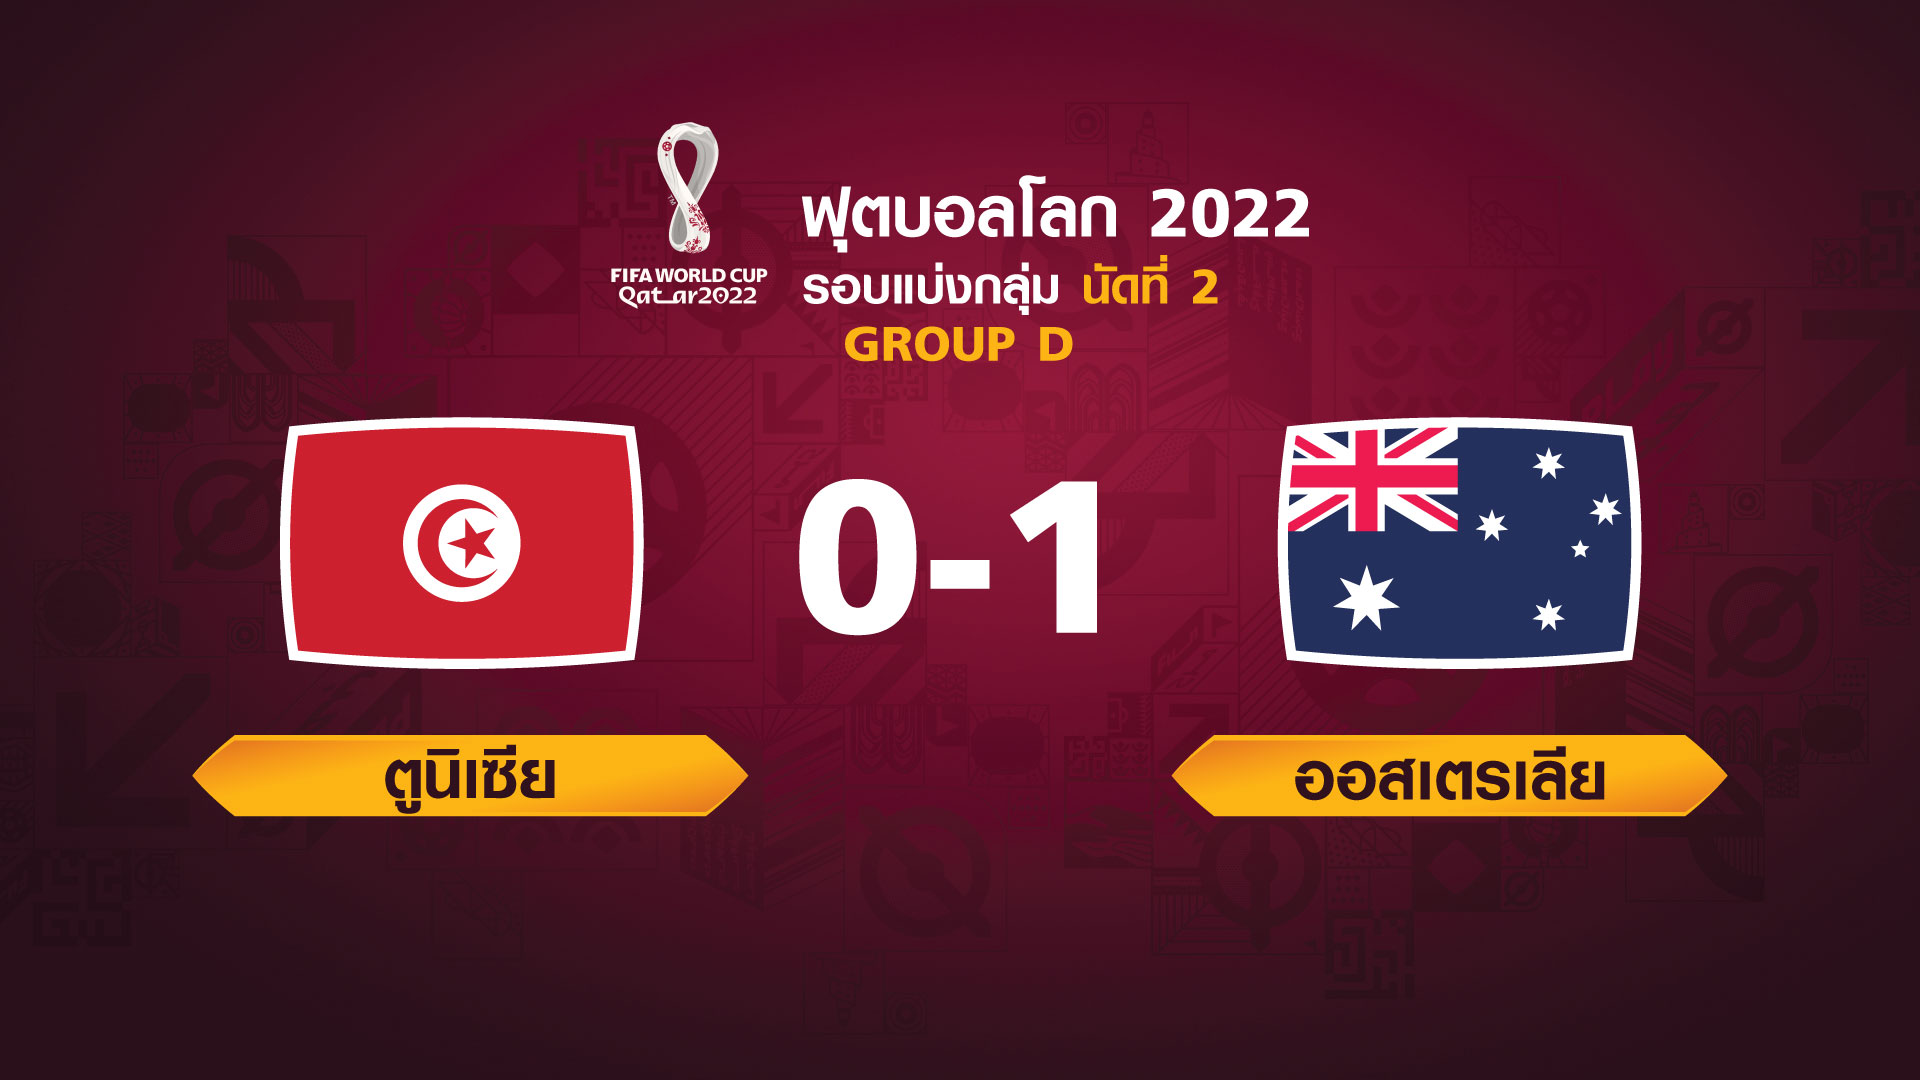 ฟุตบอลโลก 2022 รอบแบ่งกลุ่ม นัดที่ 2 ระหว่าง Tunisia vs Australia